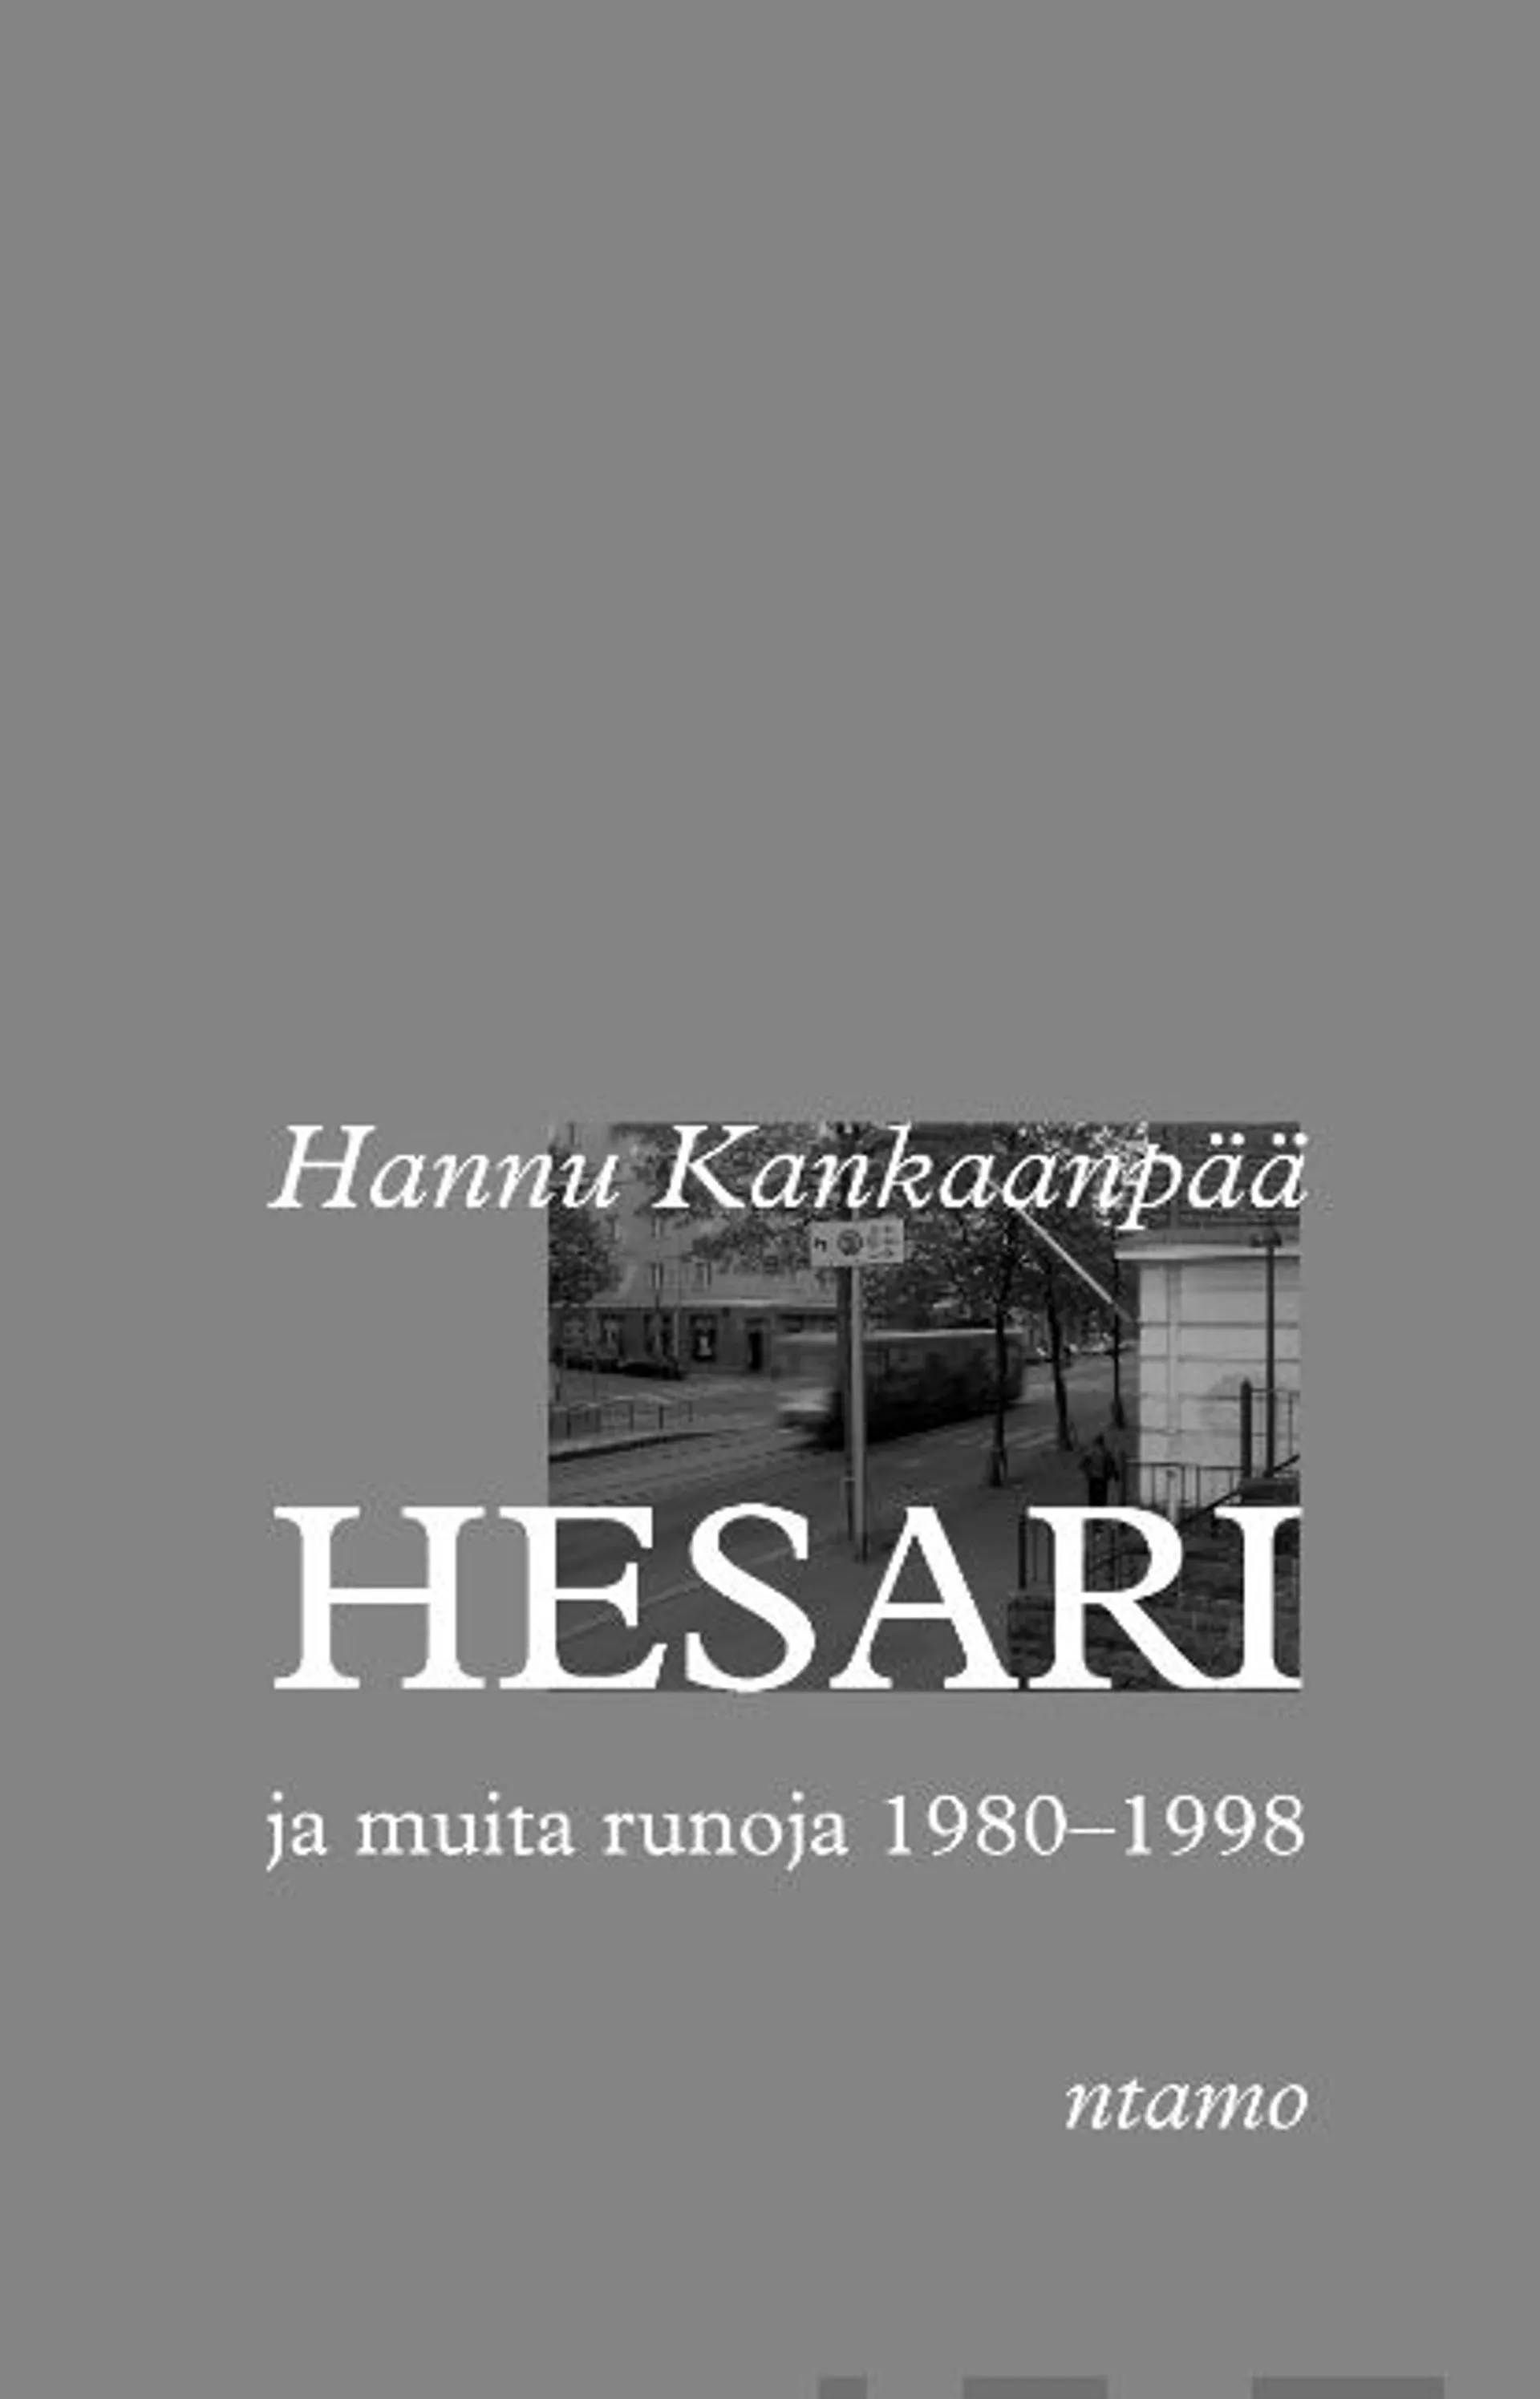 Kankaanpää, Hesari ja muita runoja 1980-1998